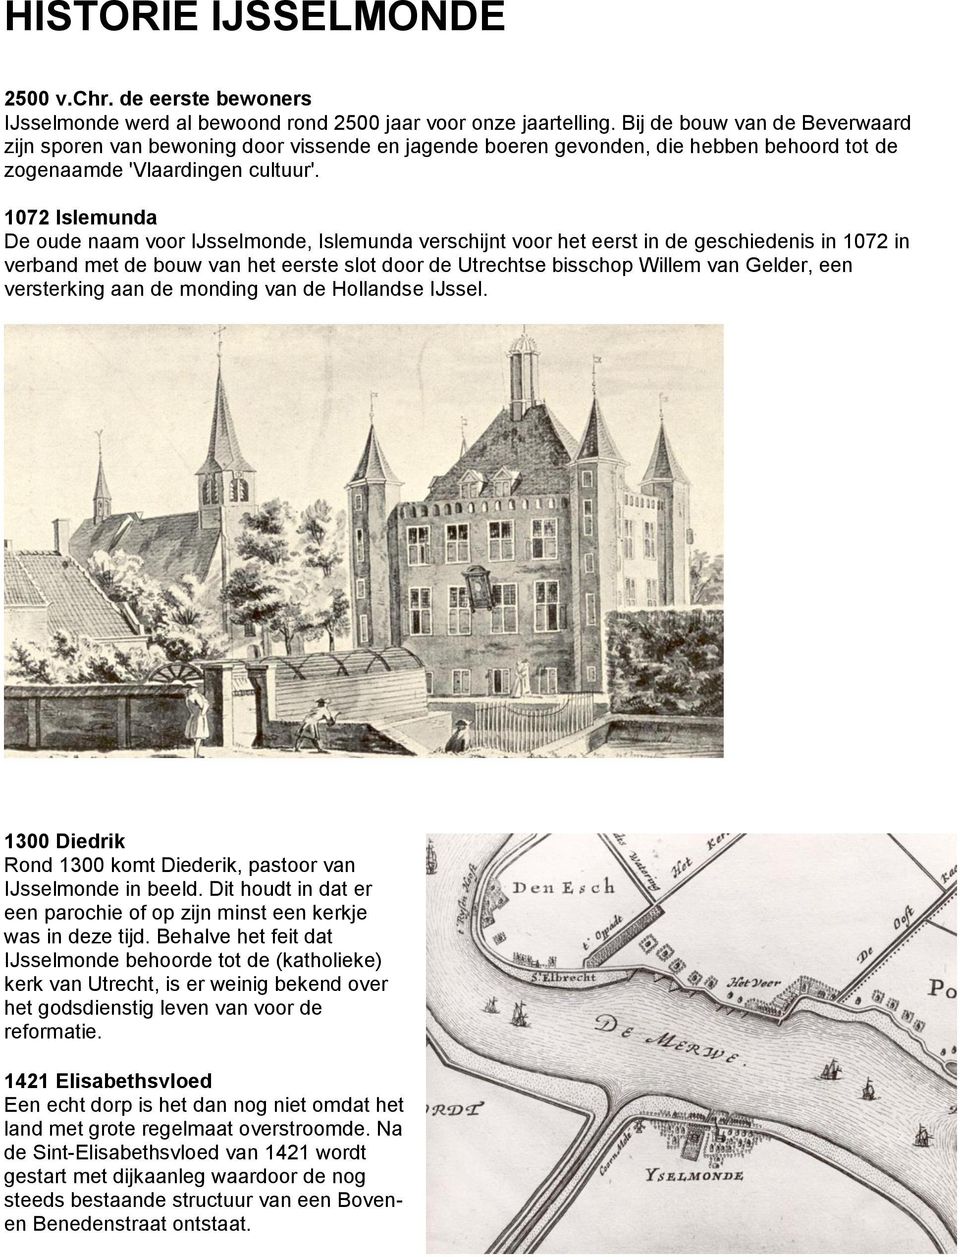 1072 Islemunda De oude naam voor IJsselmonde, Islemunda verschijnt voor het eerst in de geschiedenis in 1072 in verband met de bouw van het eerste slot door de Utrechtse bisschop Willem van Gelder,